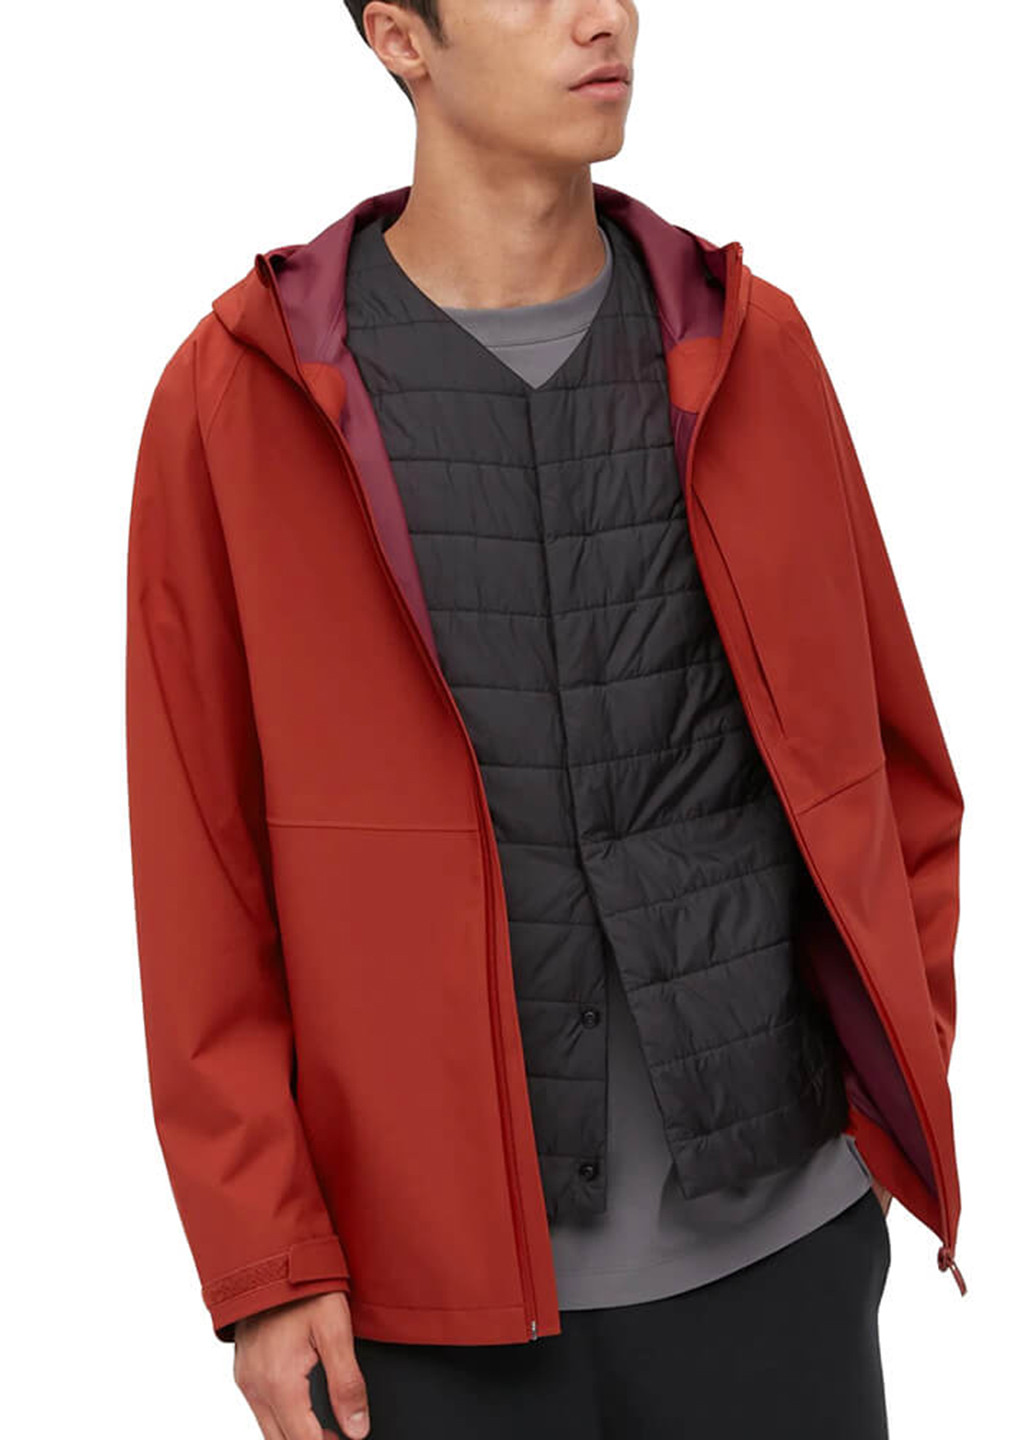 Красная демисезонная куртка Uniqlo